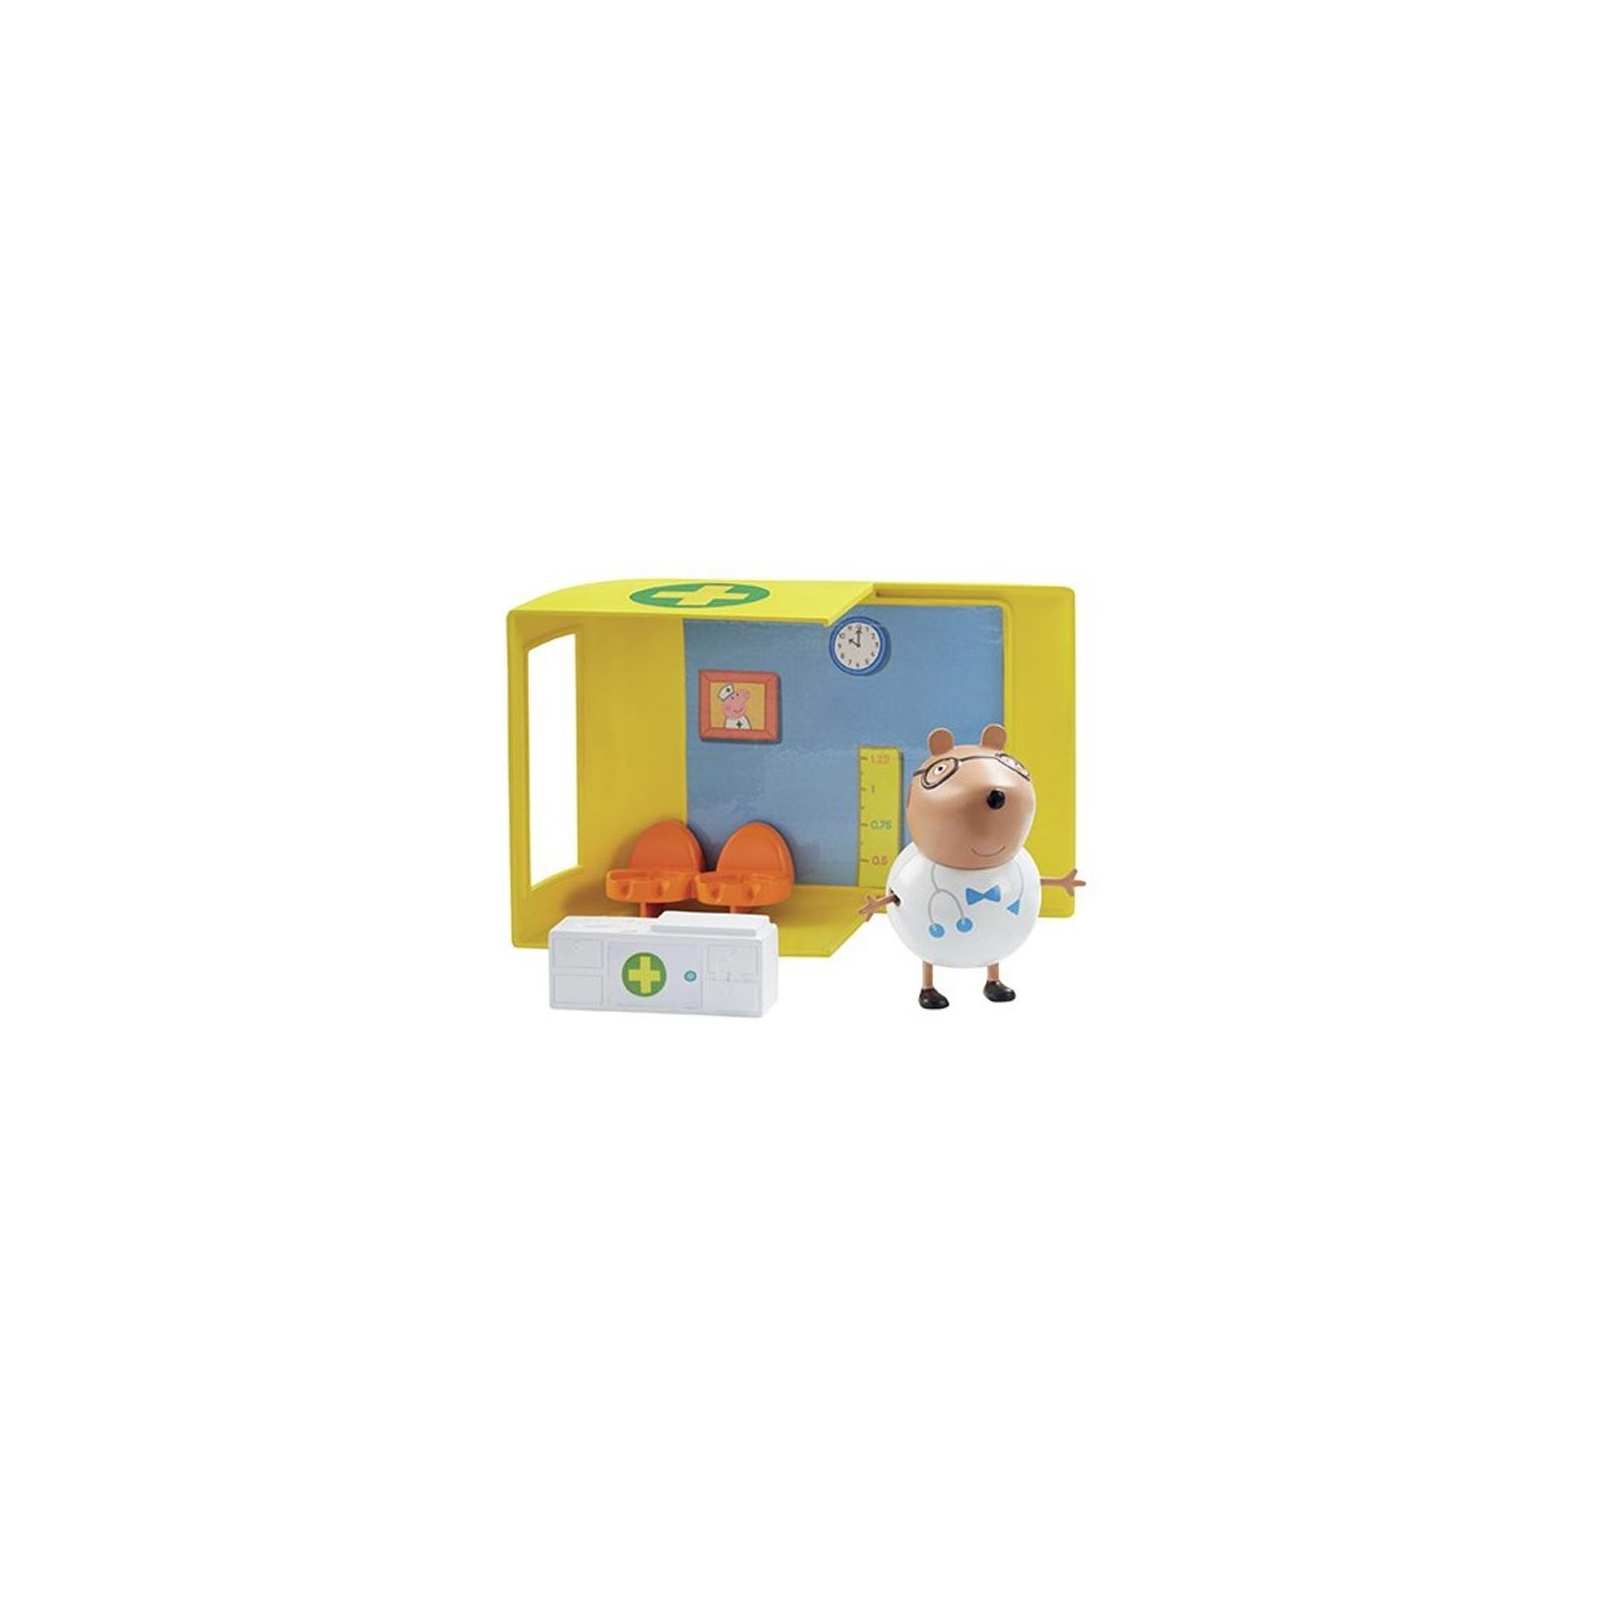 Ігровий набір Peppa Pig МЕДИЦИНСКИЙ ЦЕНТР НА КОЛЕСАХ (аксессуары, 2 фигурки) (06722) зображення 4